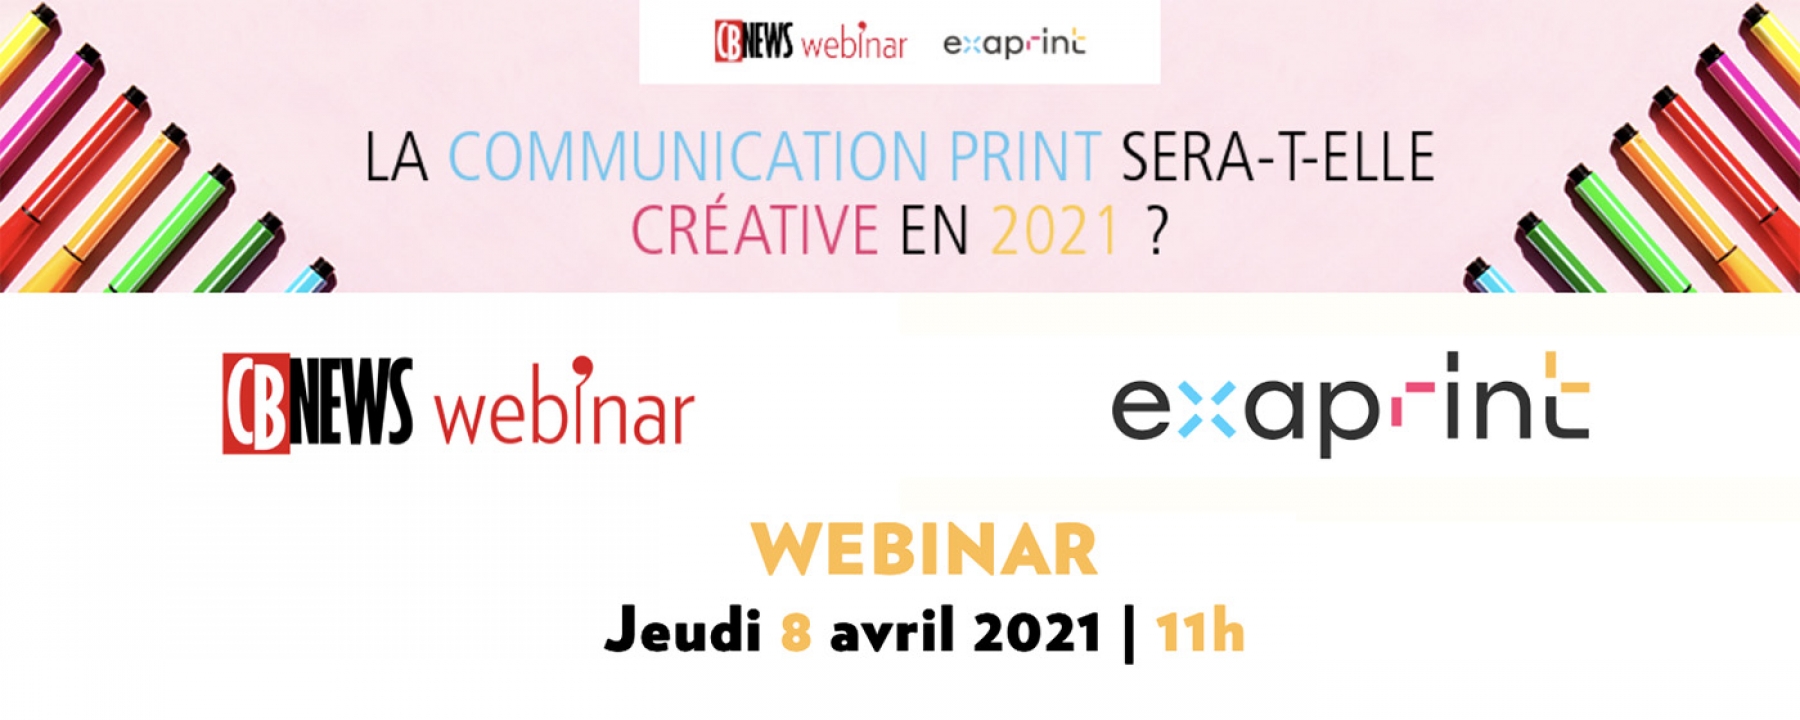 La communication print sera-t-elle créative en 2021 ? un webinar par Exaprint et CB News le 8 avril